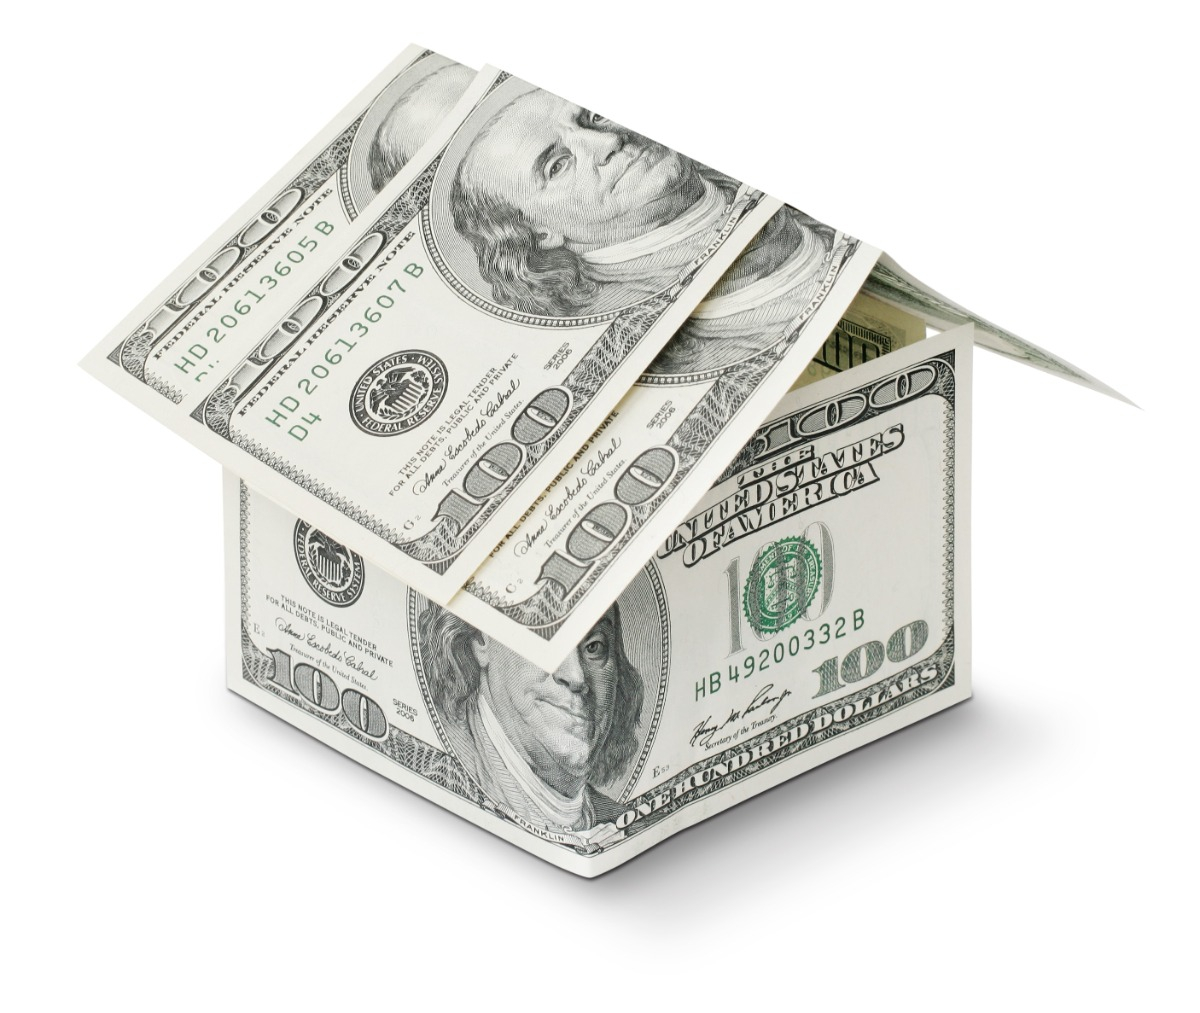 Gæld i bolig. Find ud af hvad du eller naboen skylder i boligen